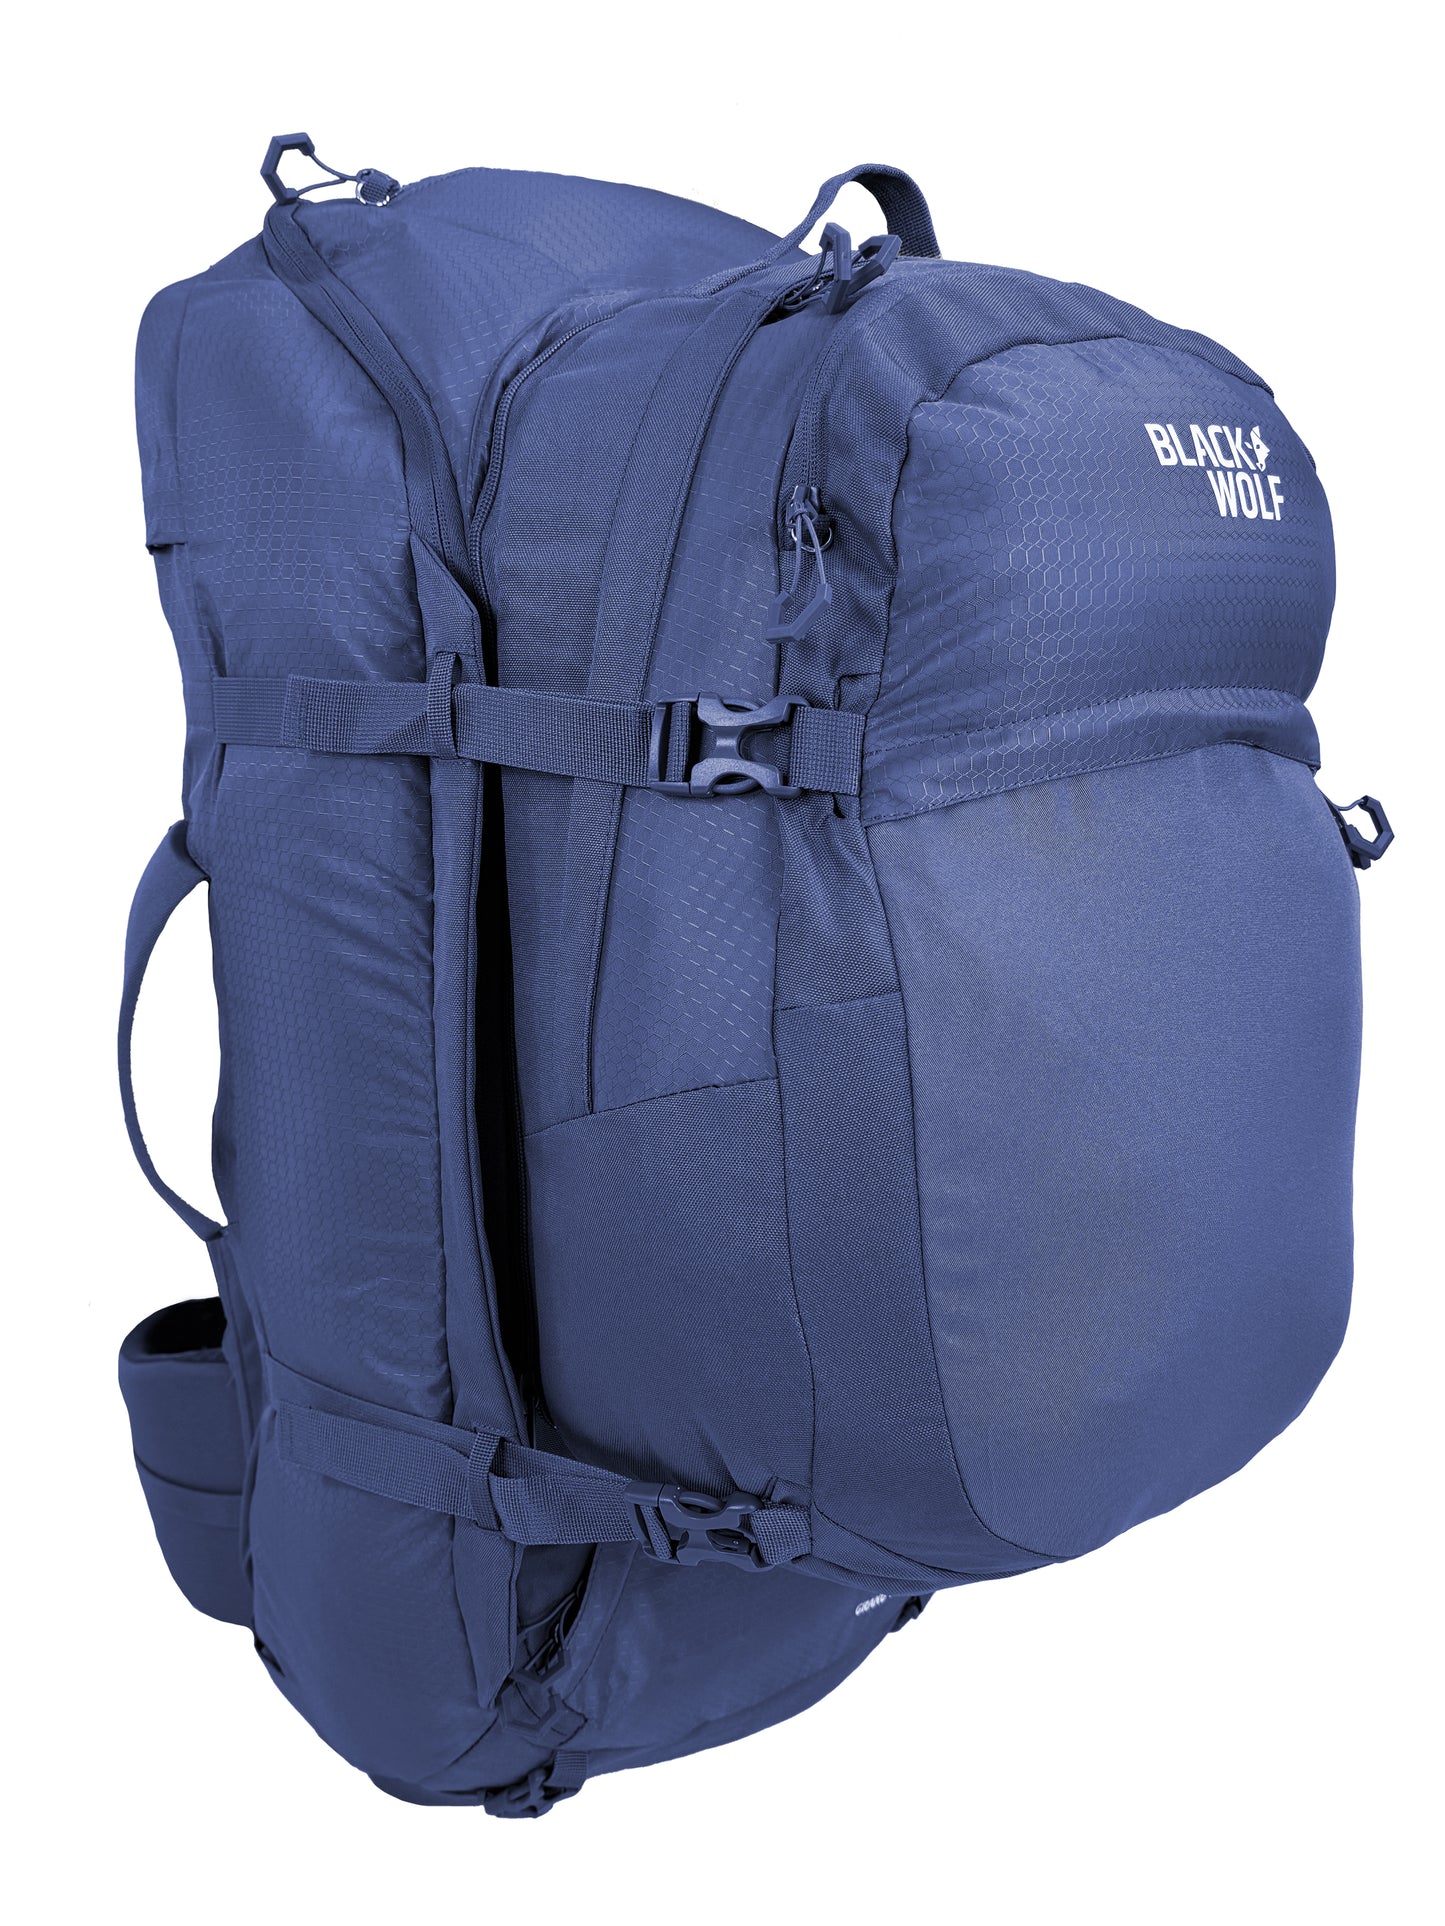 
                  
                    Grand Teton II 65 Travel Backpack
                  
                